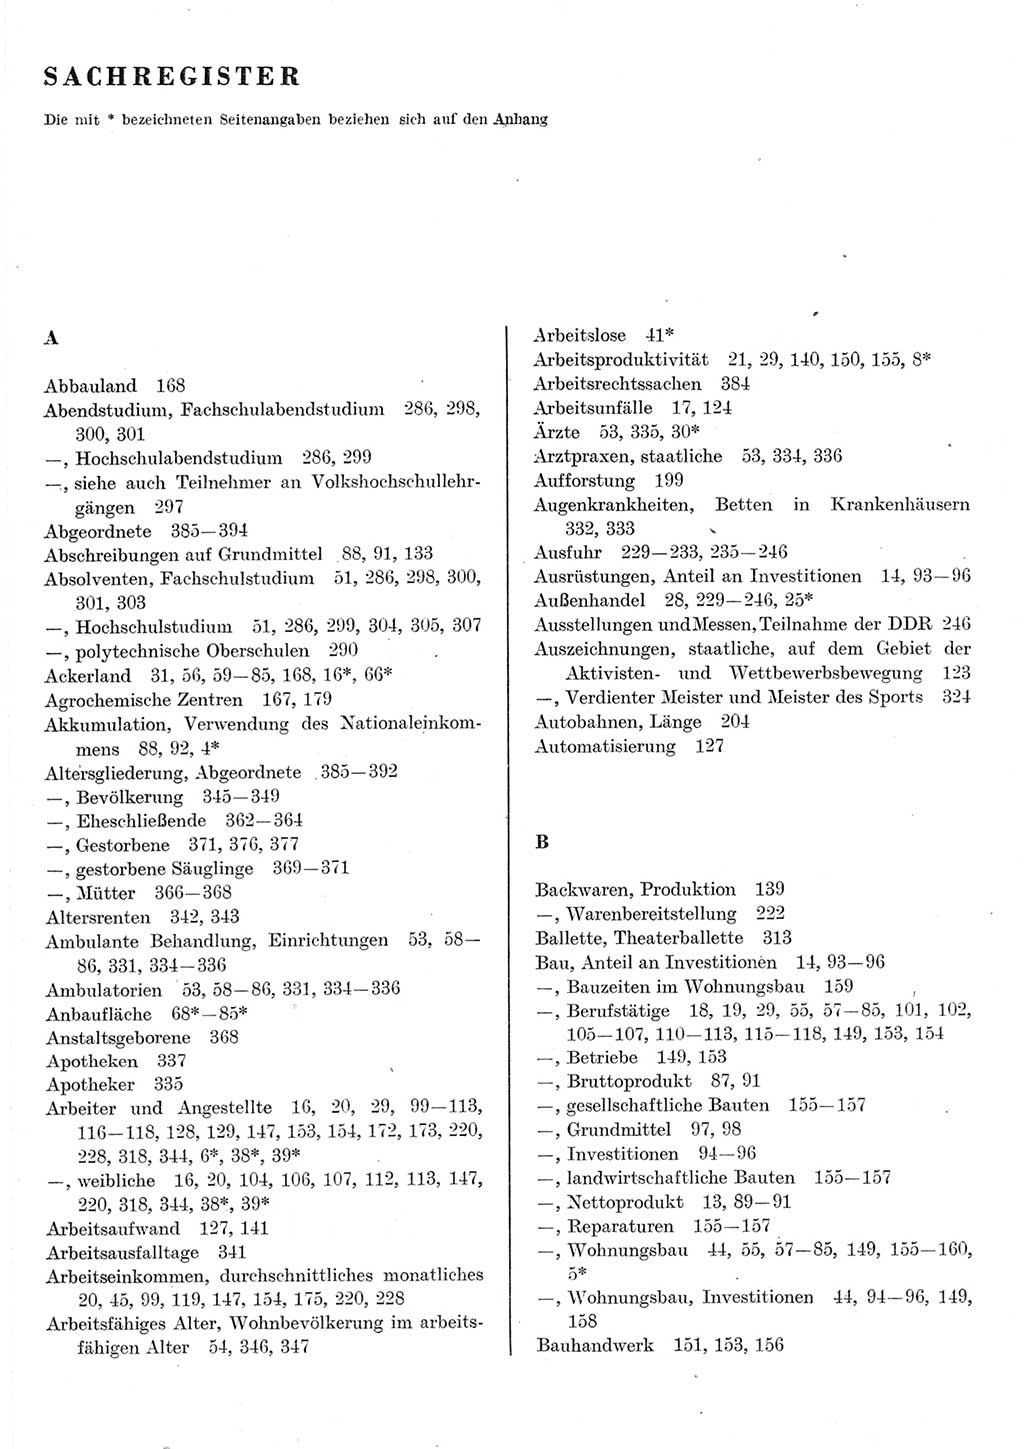 Statistisches Jahrbuch der Deutschen Demokratischen Republik (DDR) 1982, Seite 1 (Stat. Jb. DDR 1982, S. 1)